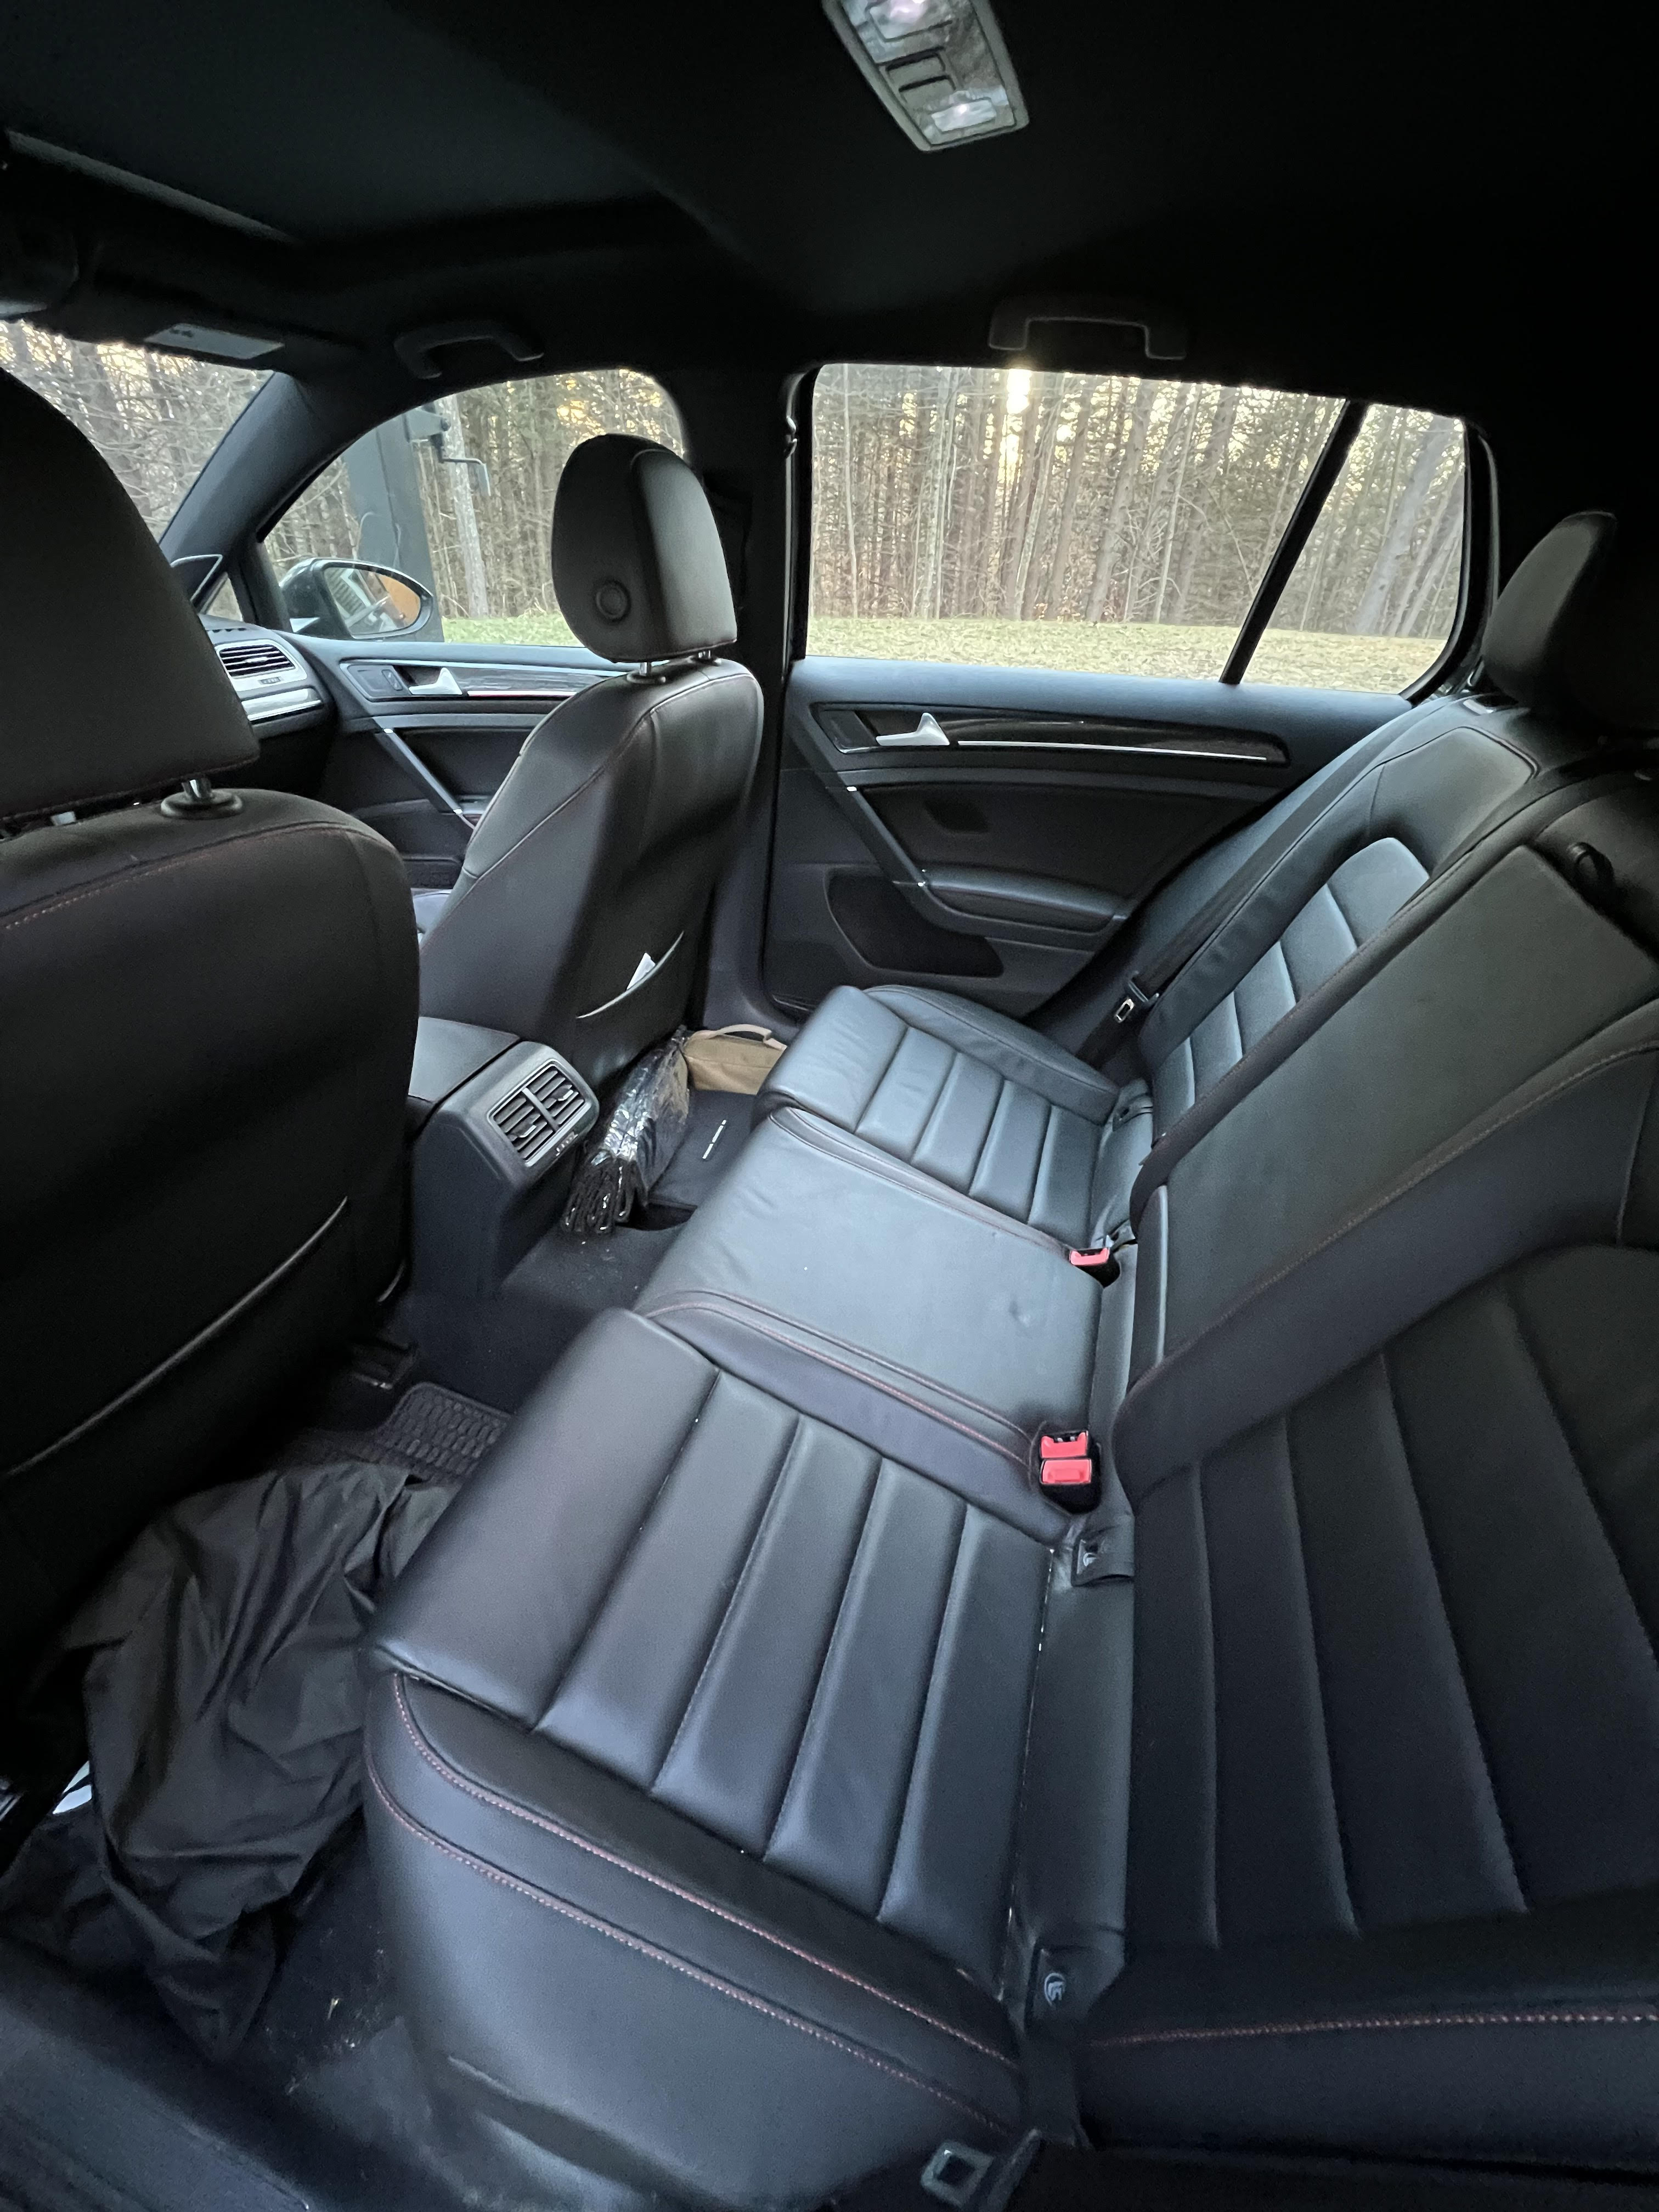 GTI Interior (Rear).jpg